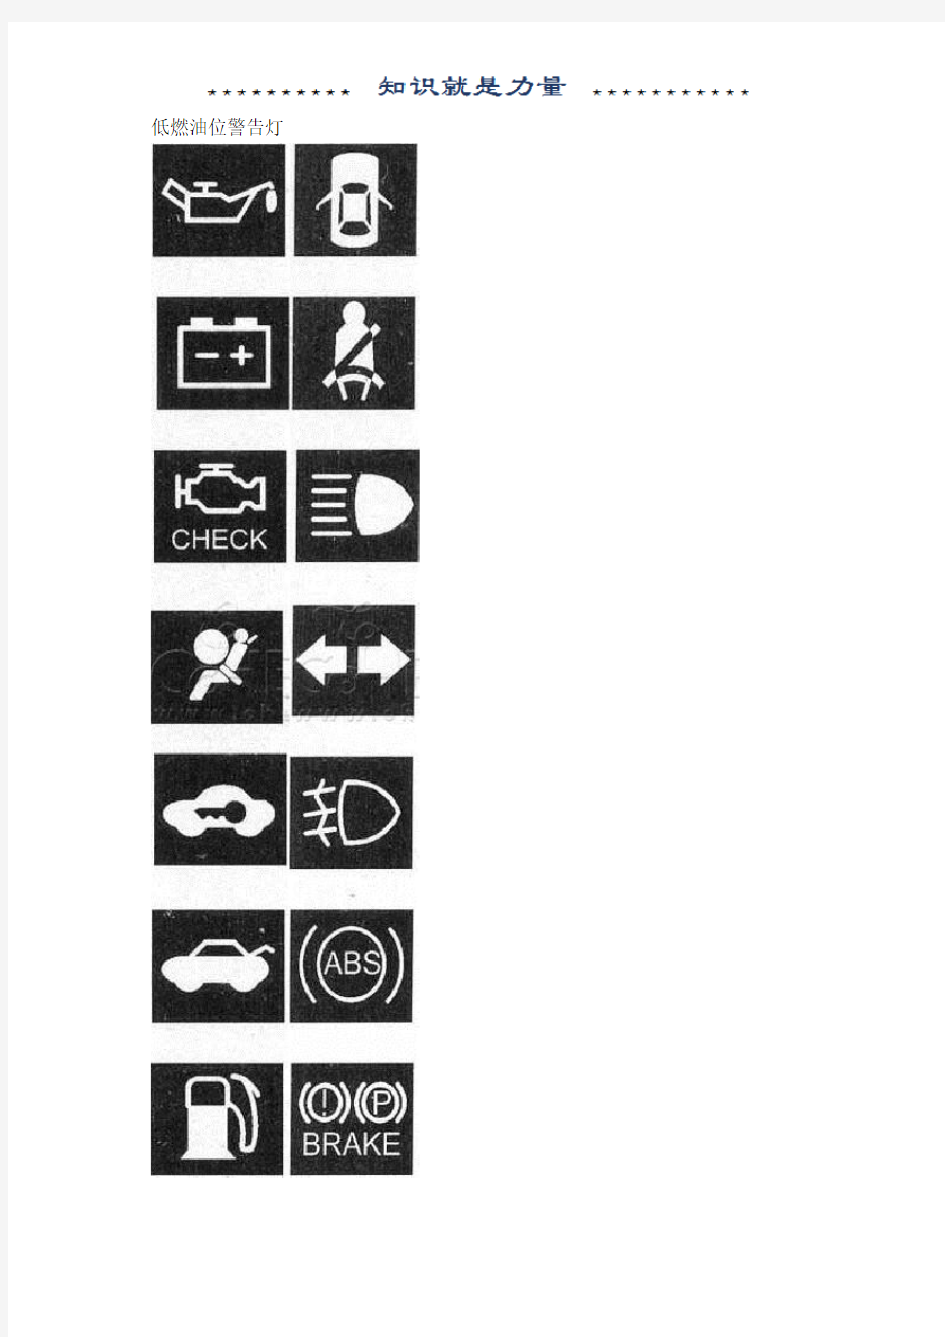 现代汽车仪表盘上的指示灯符号 图解